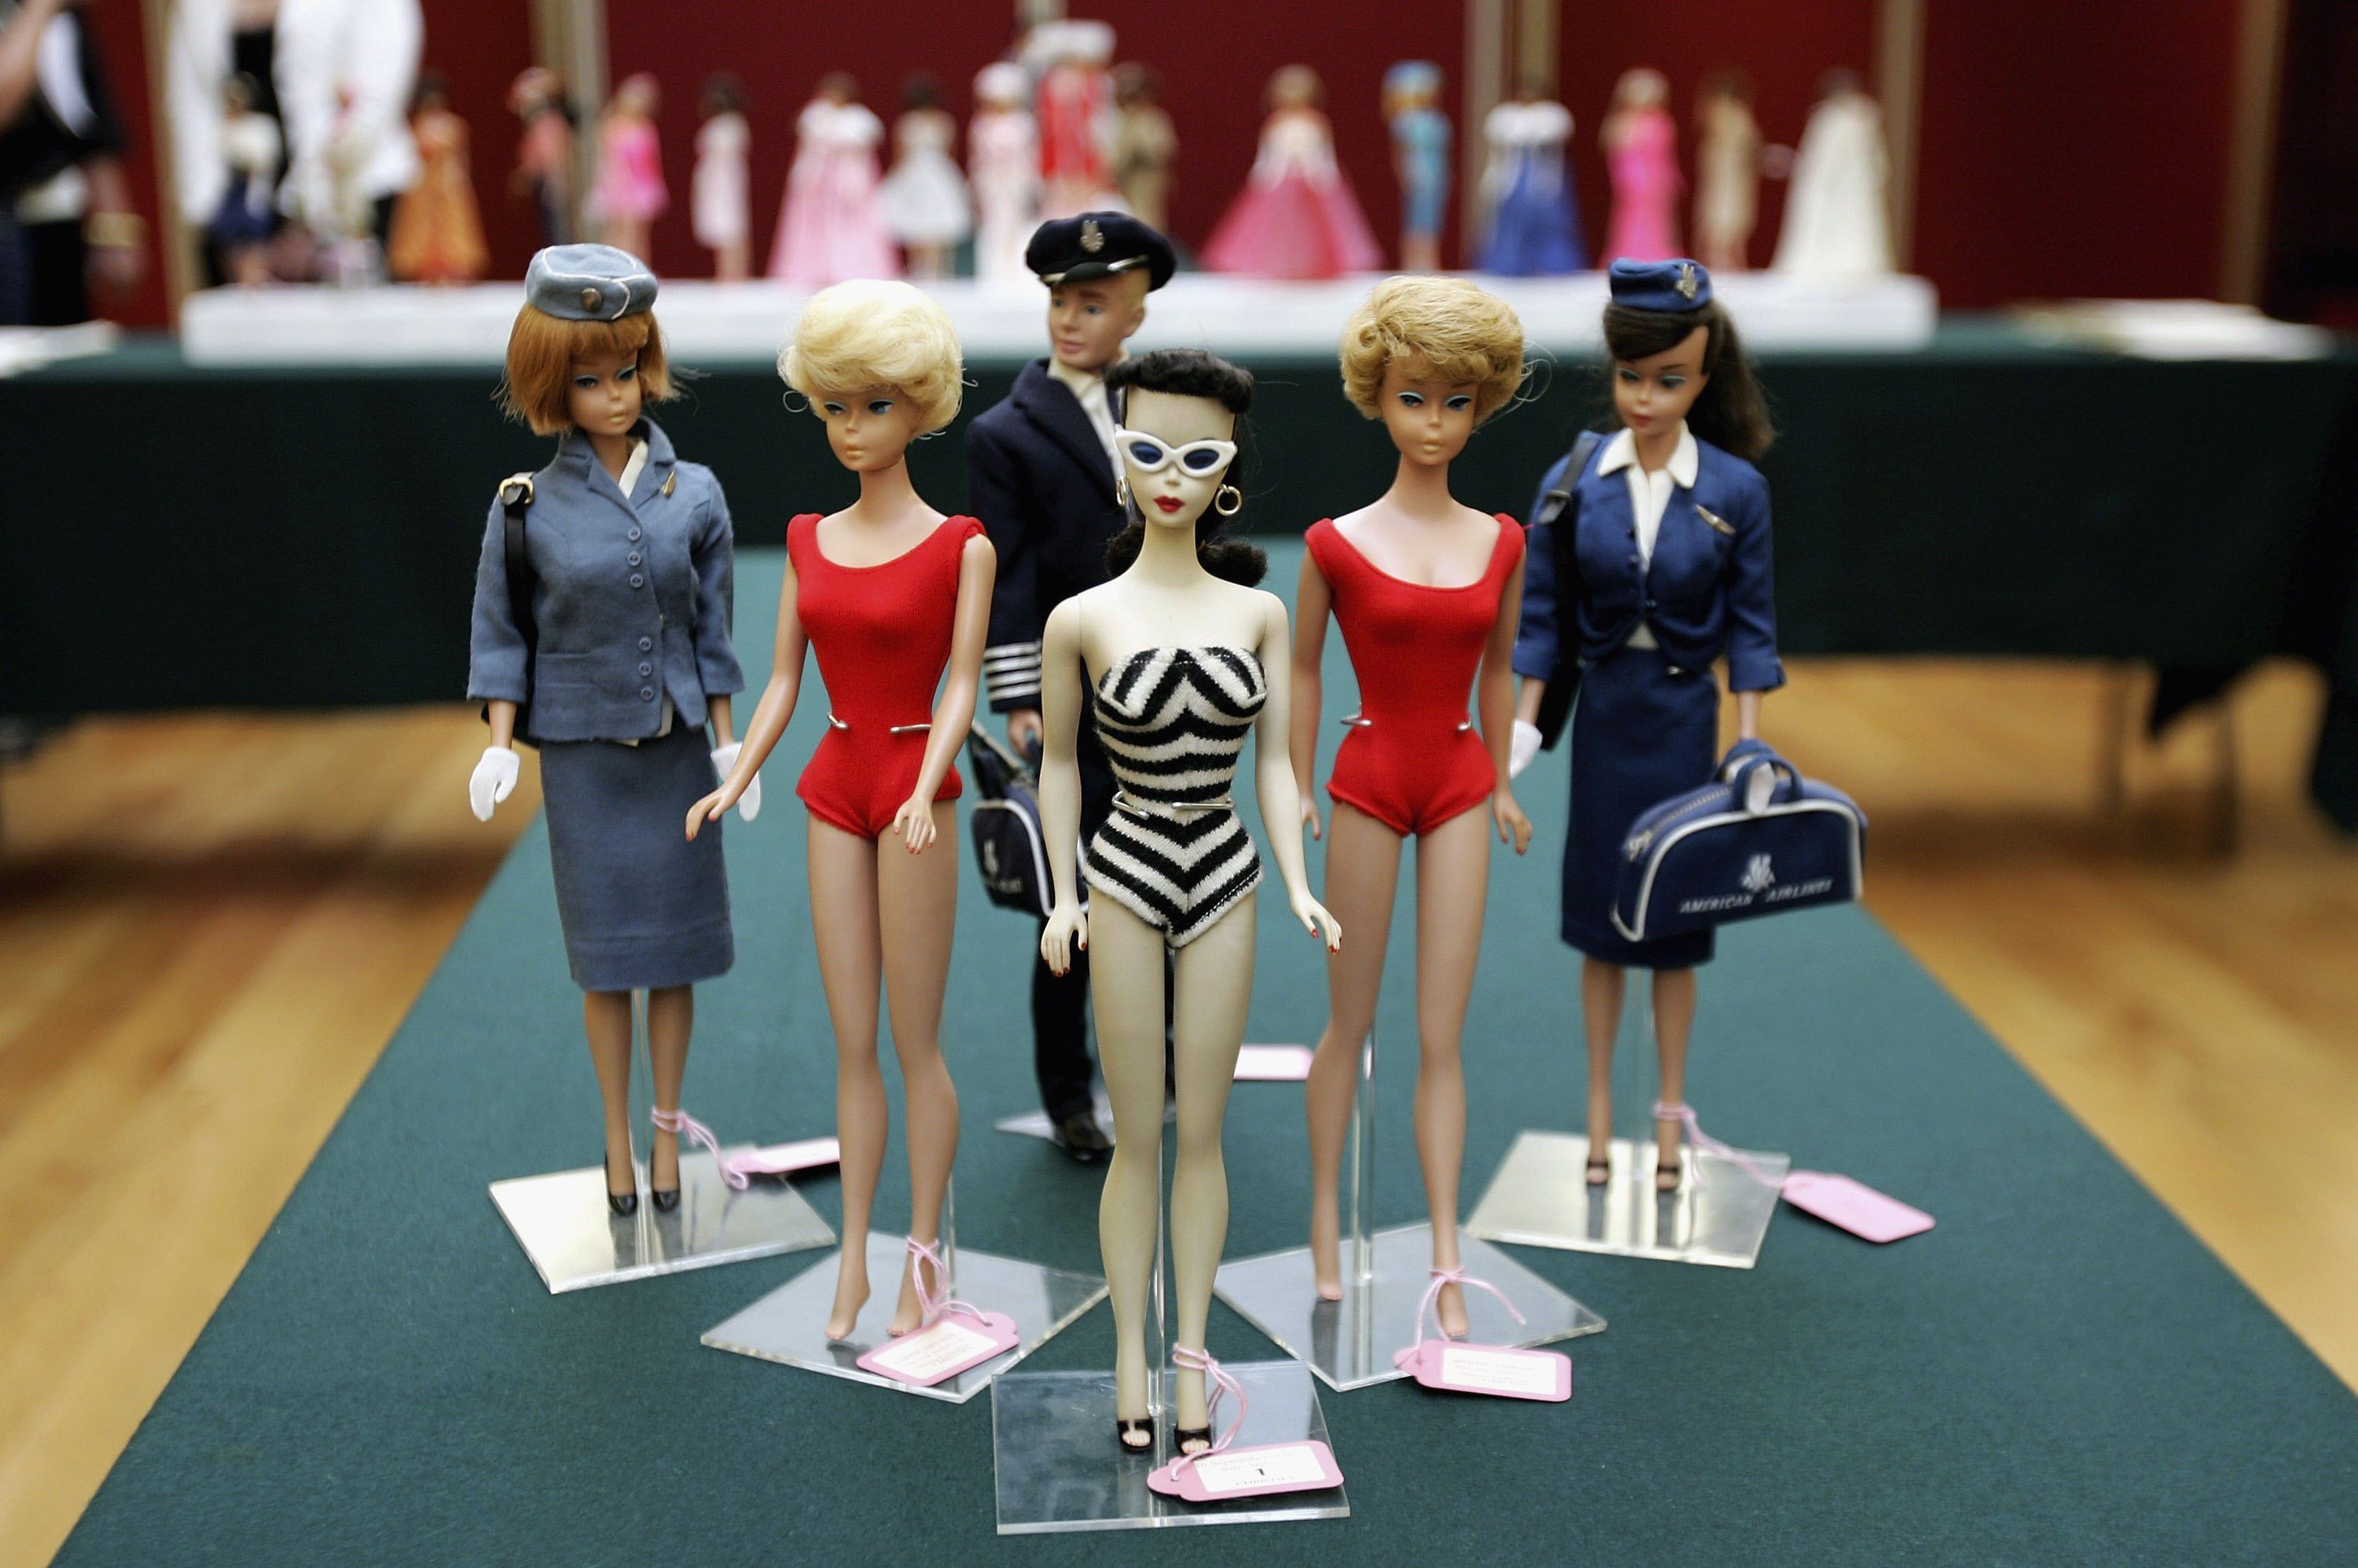 Hard Rock Barbie, Vintage Barbie Doll, Barbie Collector, Mattel